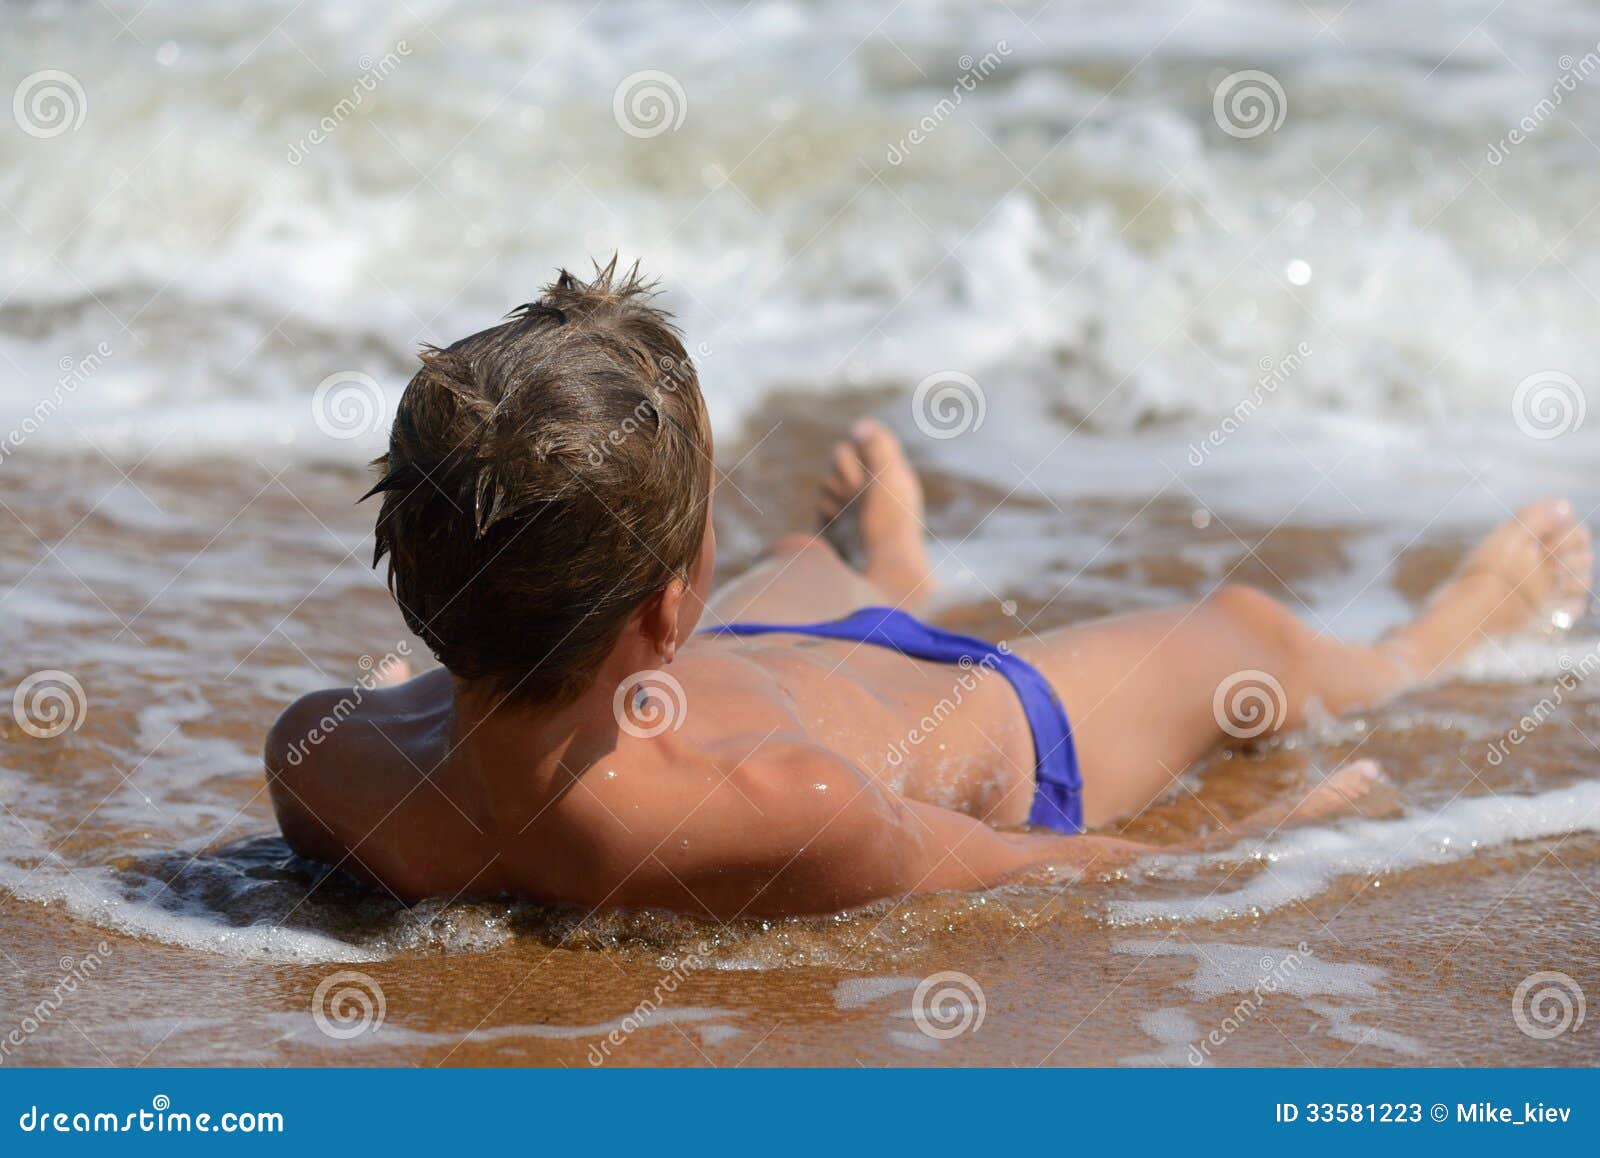 Купаемся в плавках. Загорелый мальчик на пляже. Мальчик подросток на пляже. Мальчики загорают на пляже. Фотосессия на пляже мальчишек.